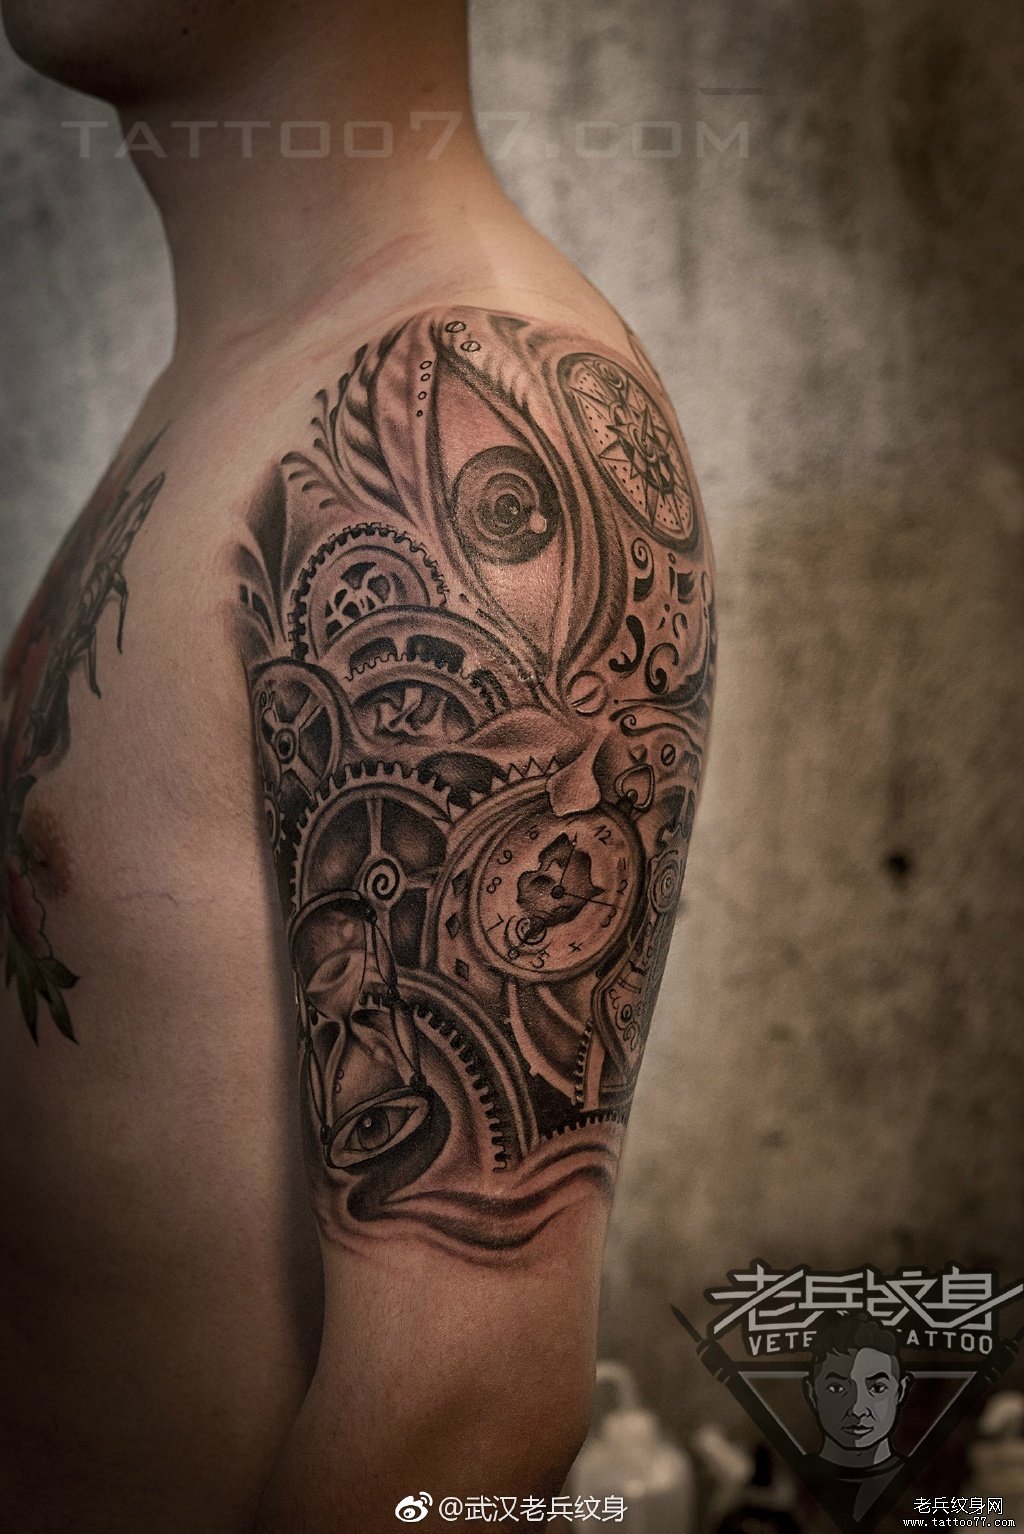 武汉女纹身师打造的大臂膀欧美机械纹身图案作品